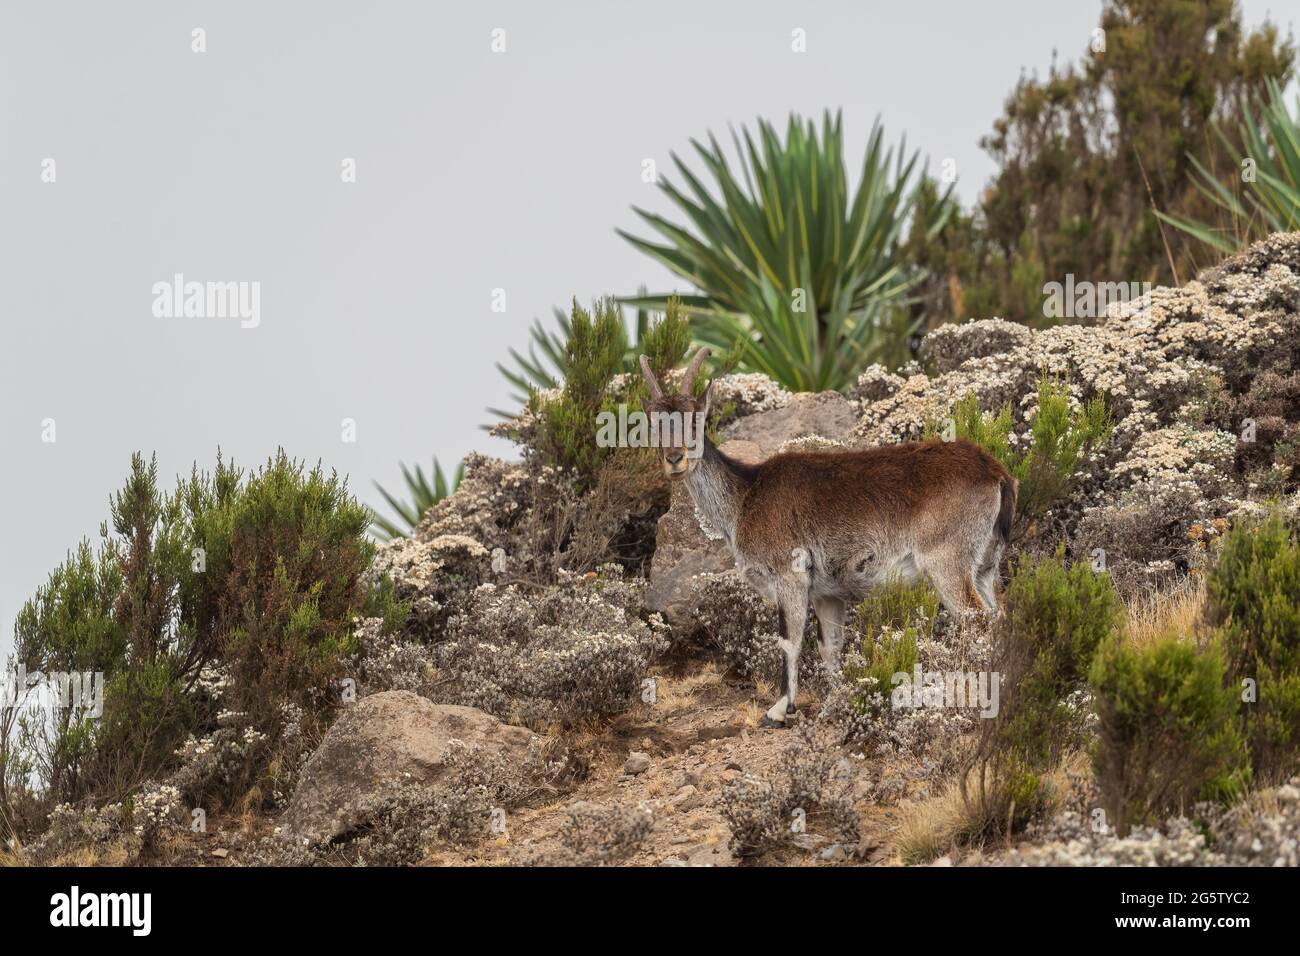 Walia Ibex - Capra walie, schöner endemischer Steinbock aus den Simian Bergen, Äthiopien. Stockfoto